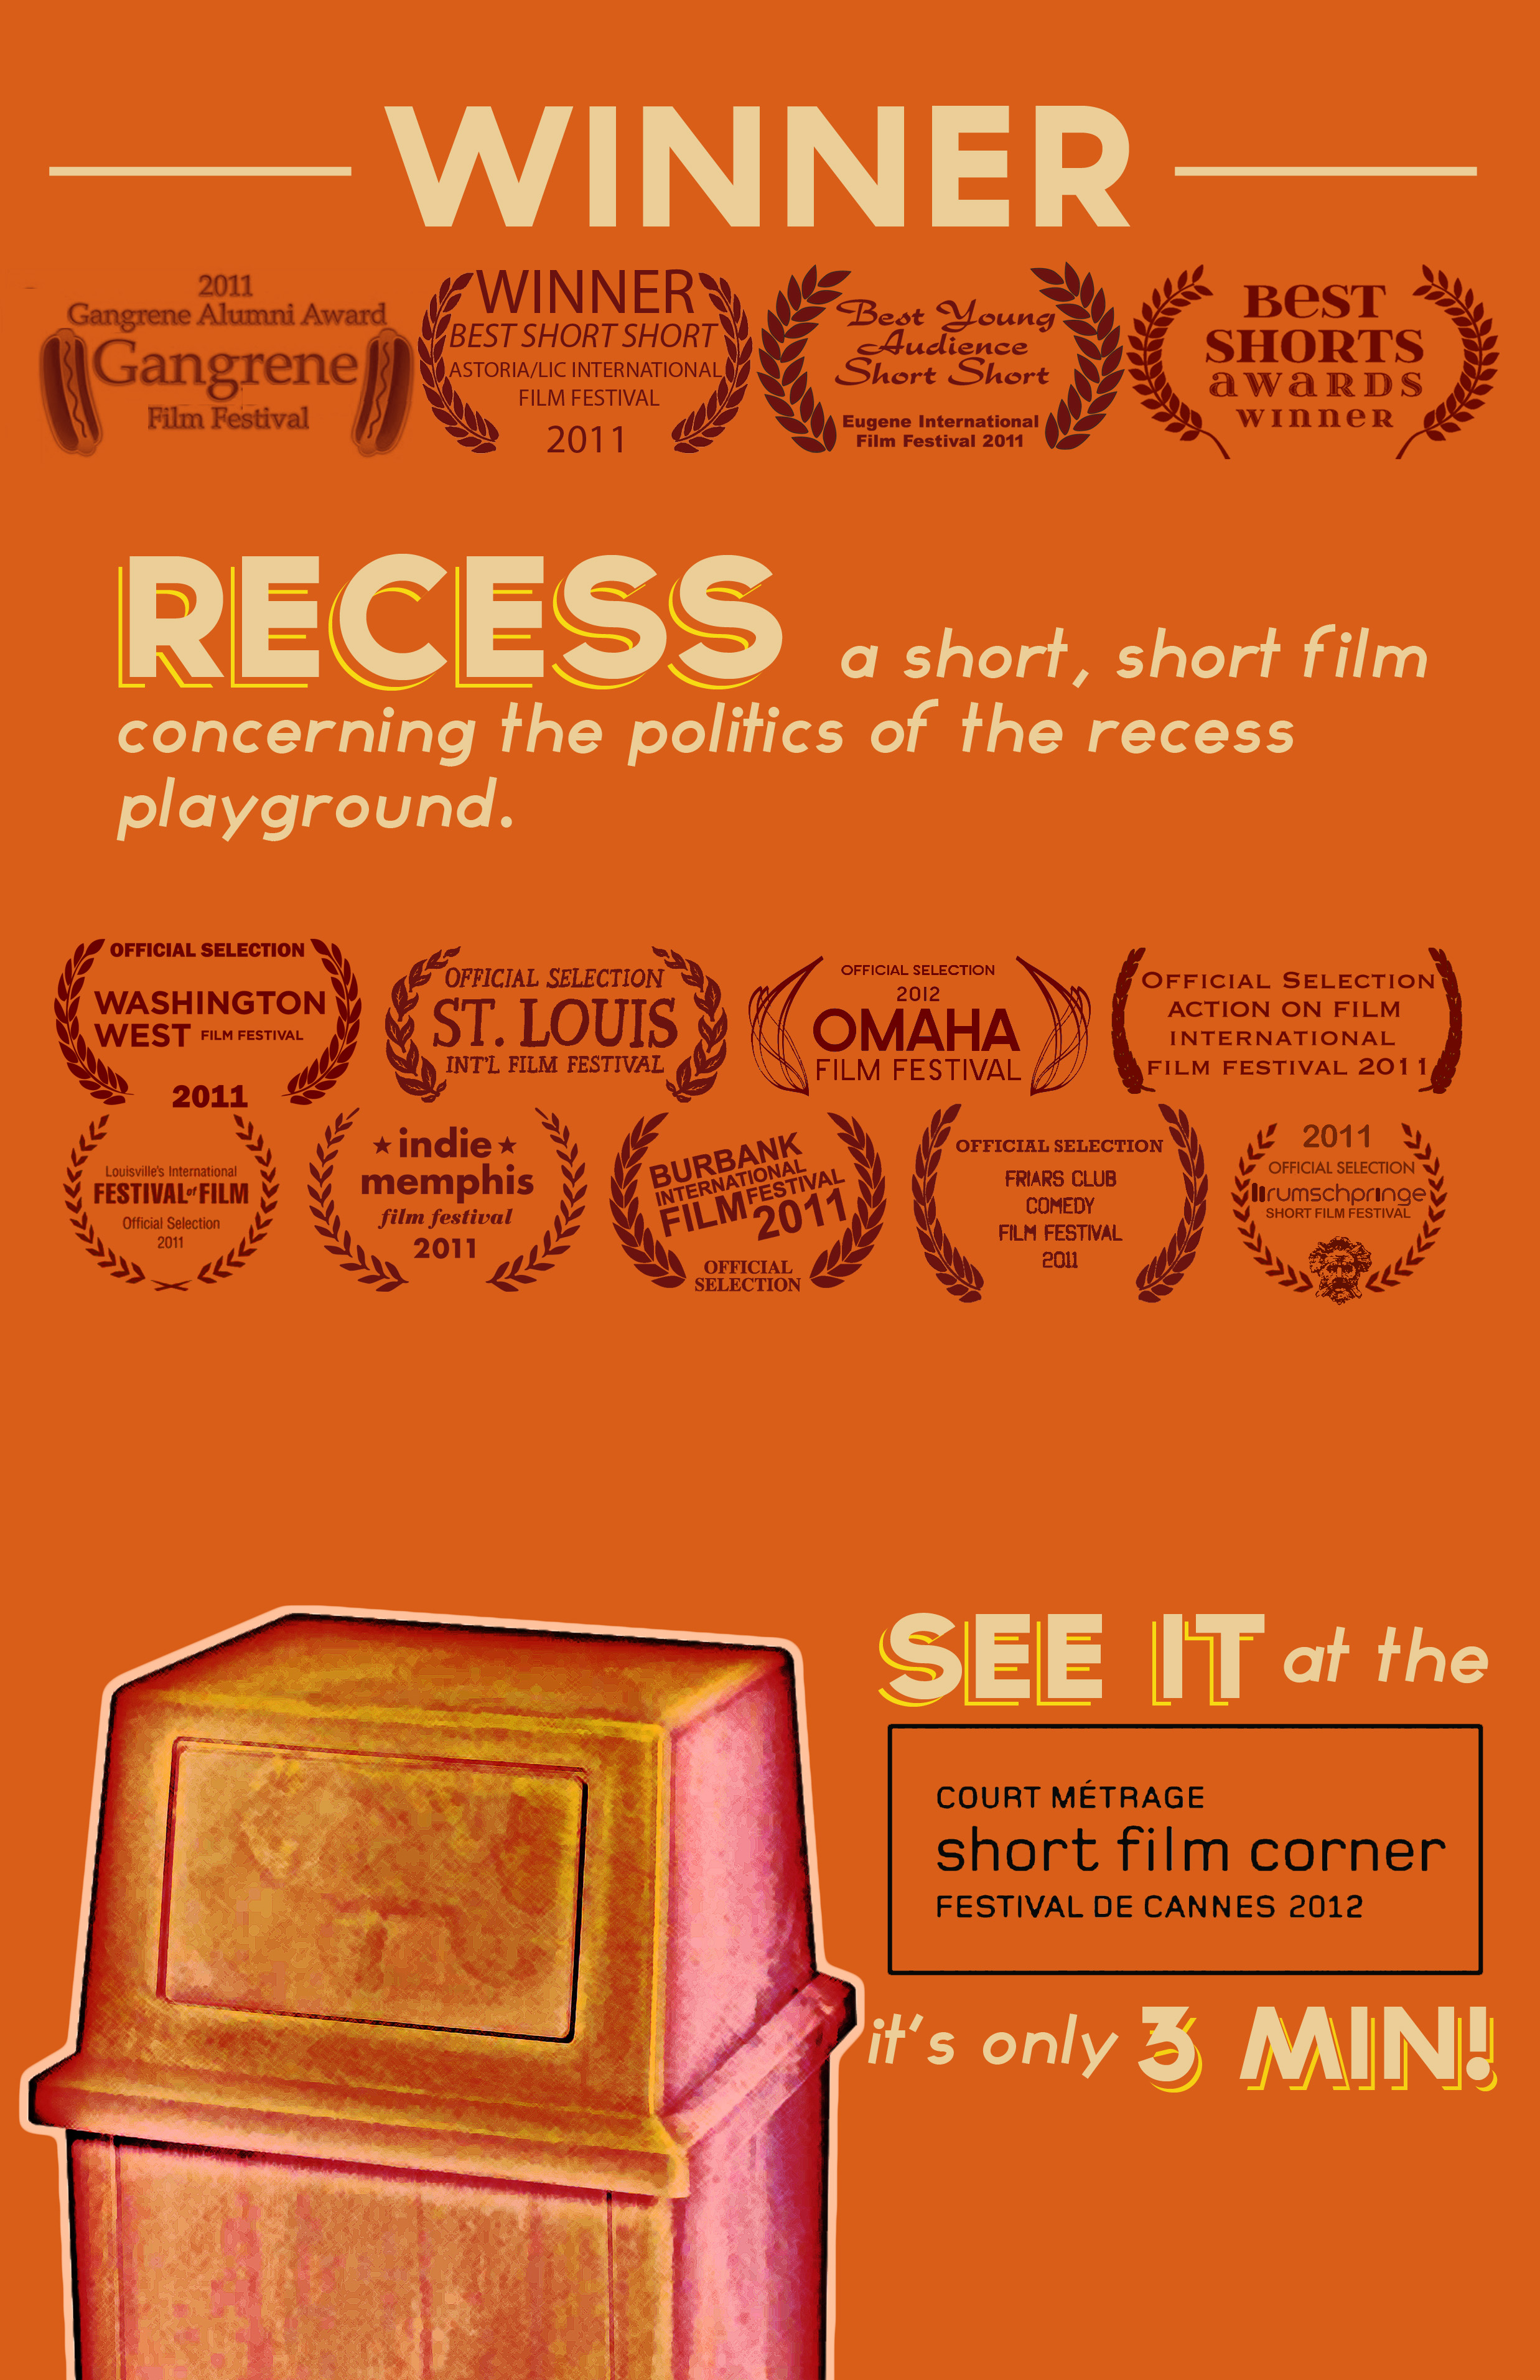 Official Poster: RECESS Festival De Cannes 2012